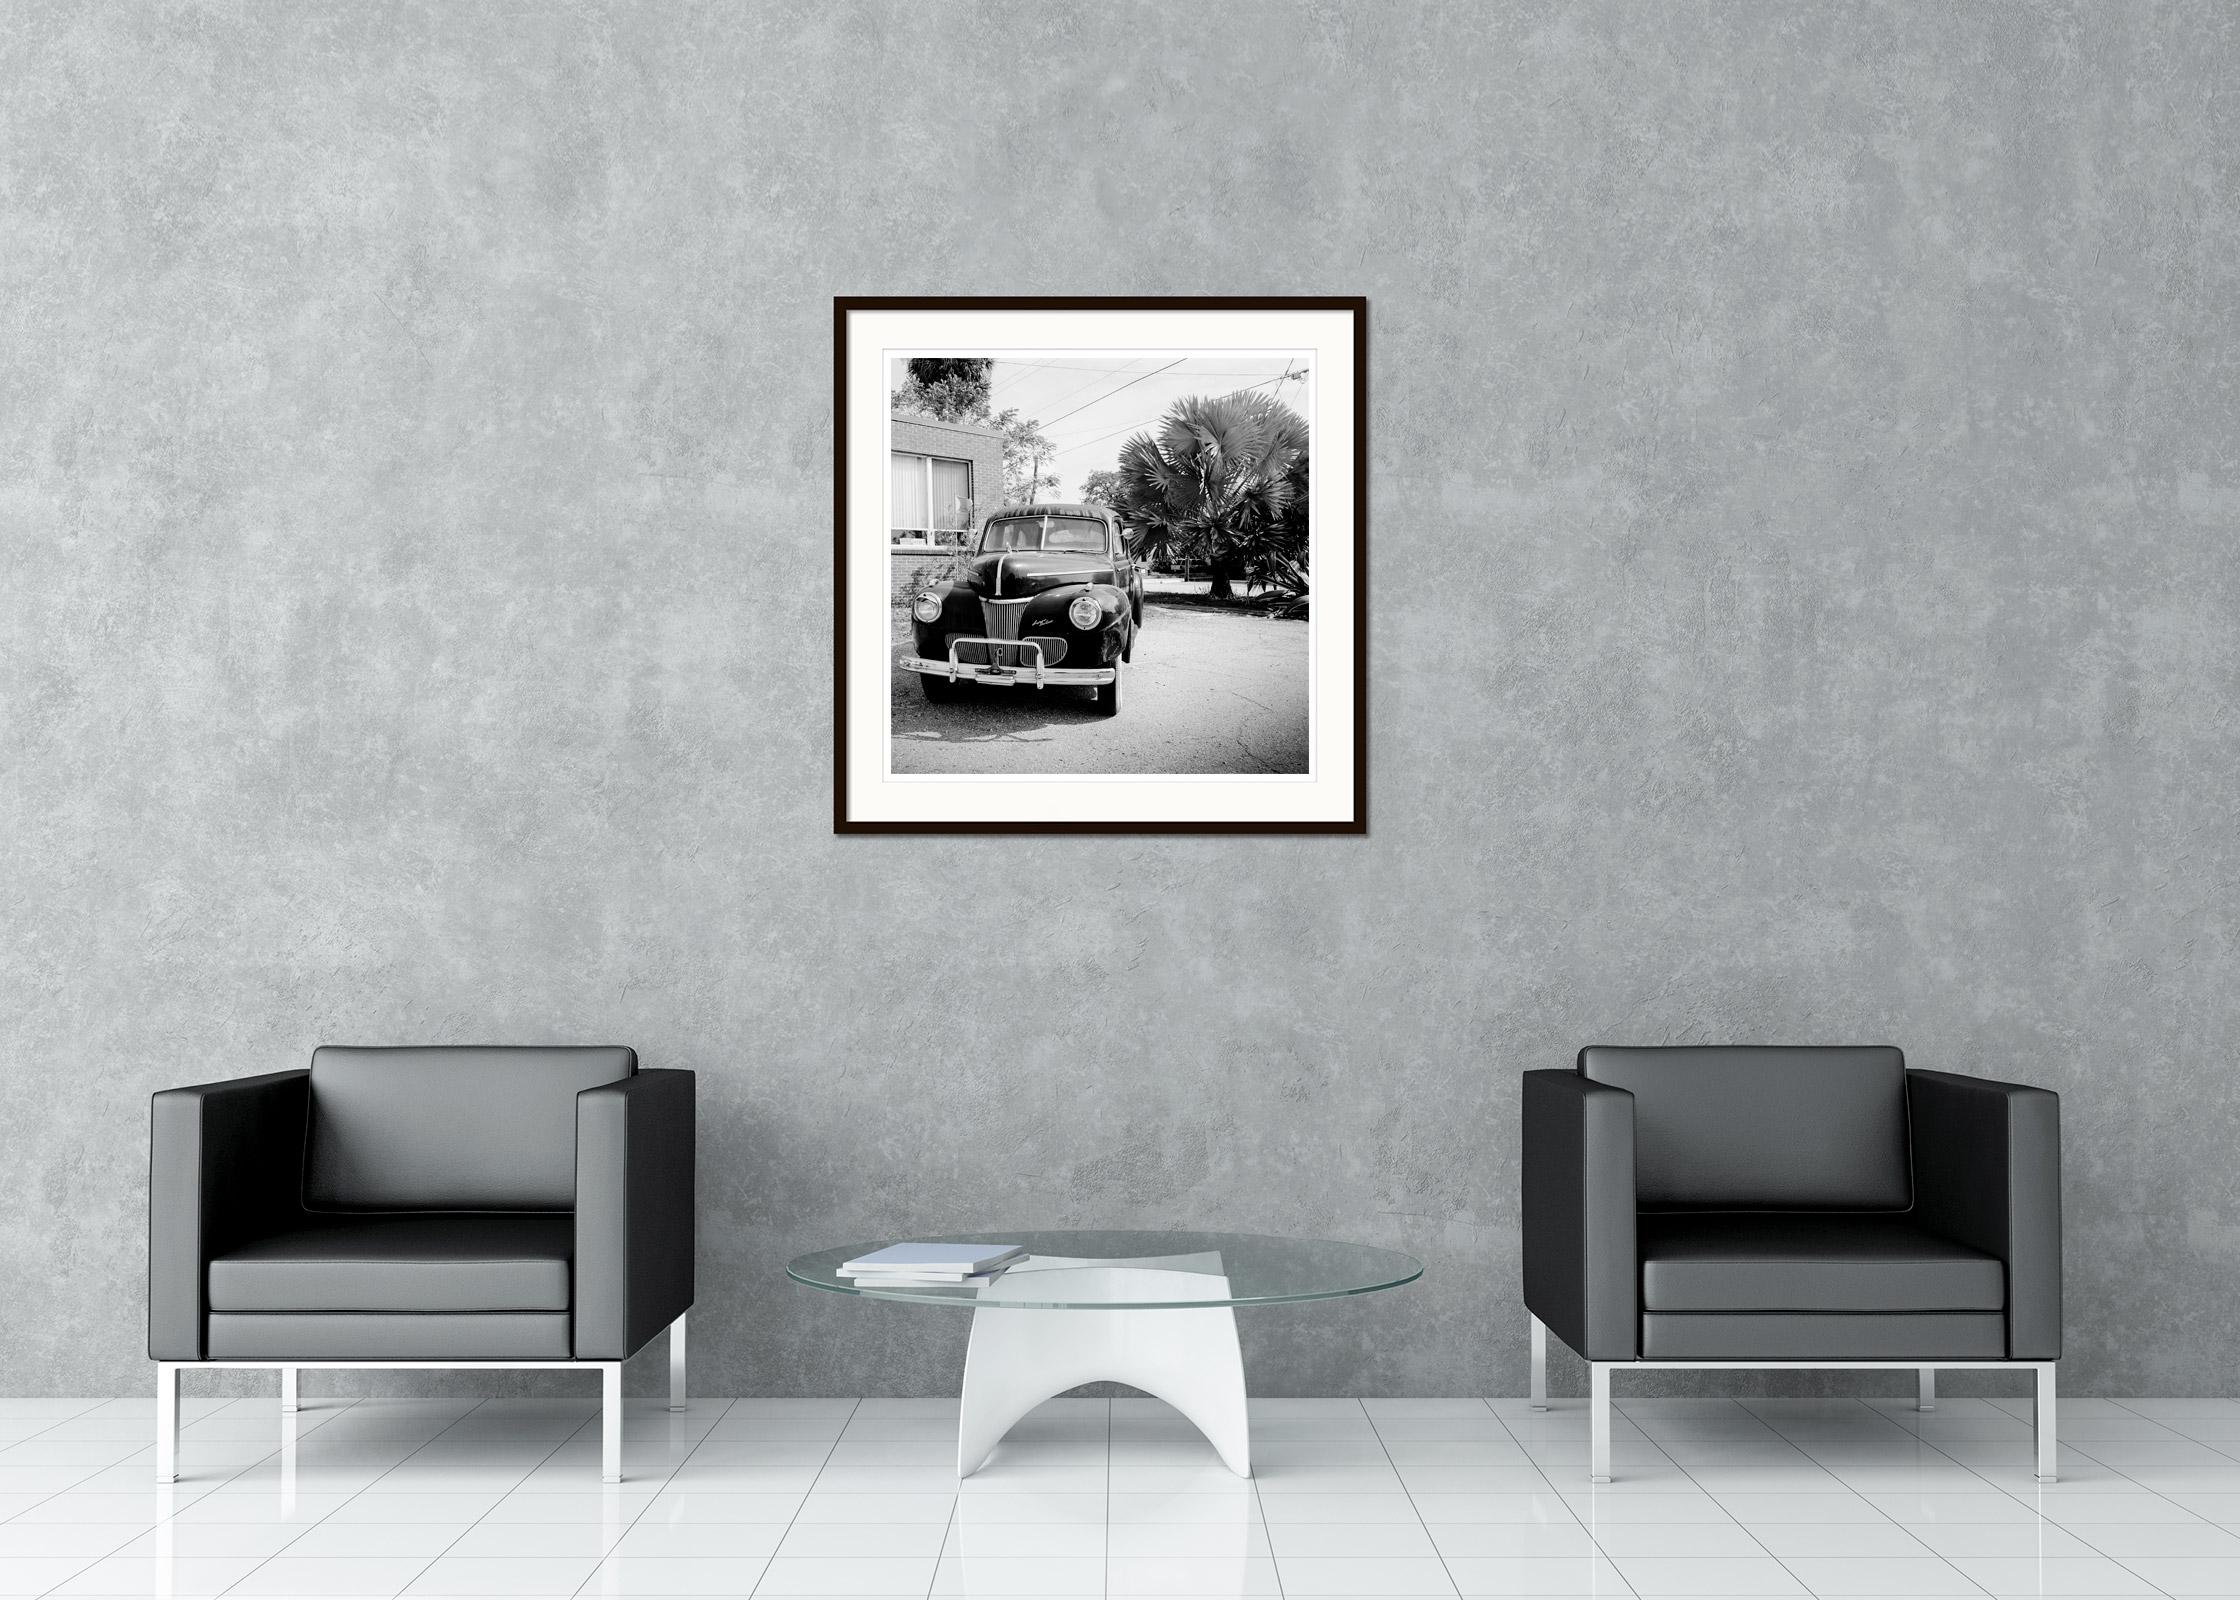 Black and White Fine Art Photography for Sale - 1941 Ford Super Deluxe Business Coupe, Oldtimer, Oldtimer vor einem Haus mit Palmen. Pigmenttintendruck, Auflage 9, signiert, betitelt, datiert und nummeriert vom Künstler. Mit Echtheitszertifikat.